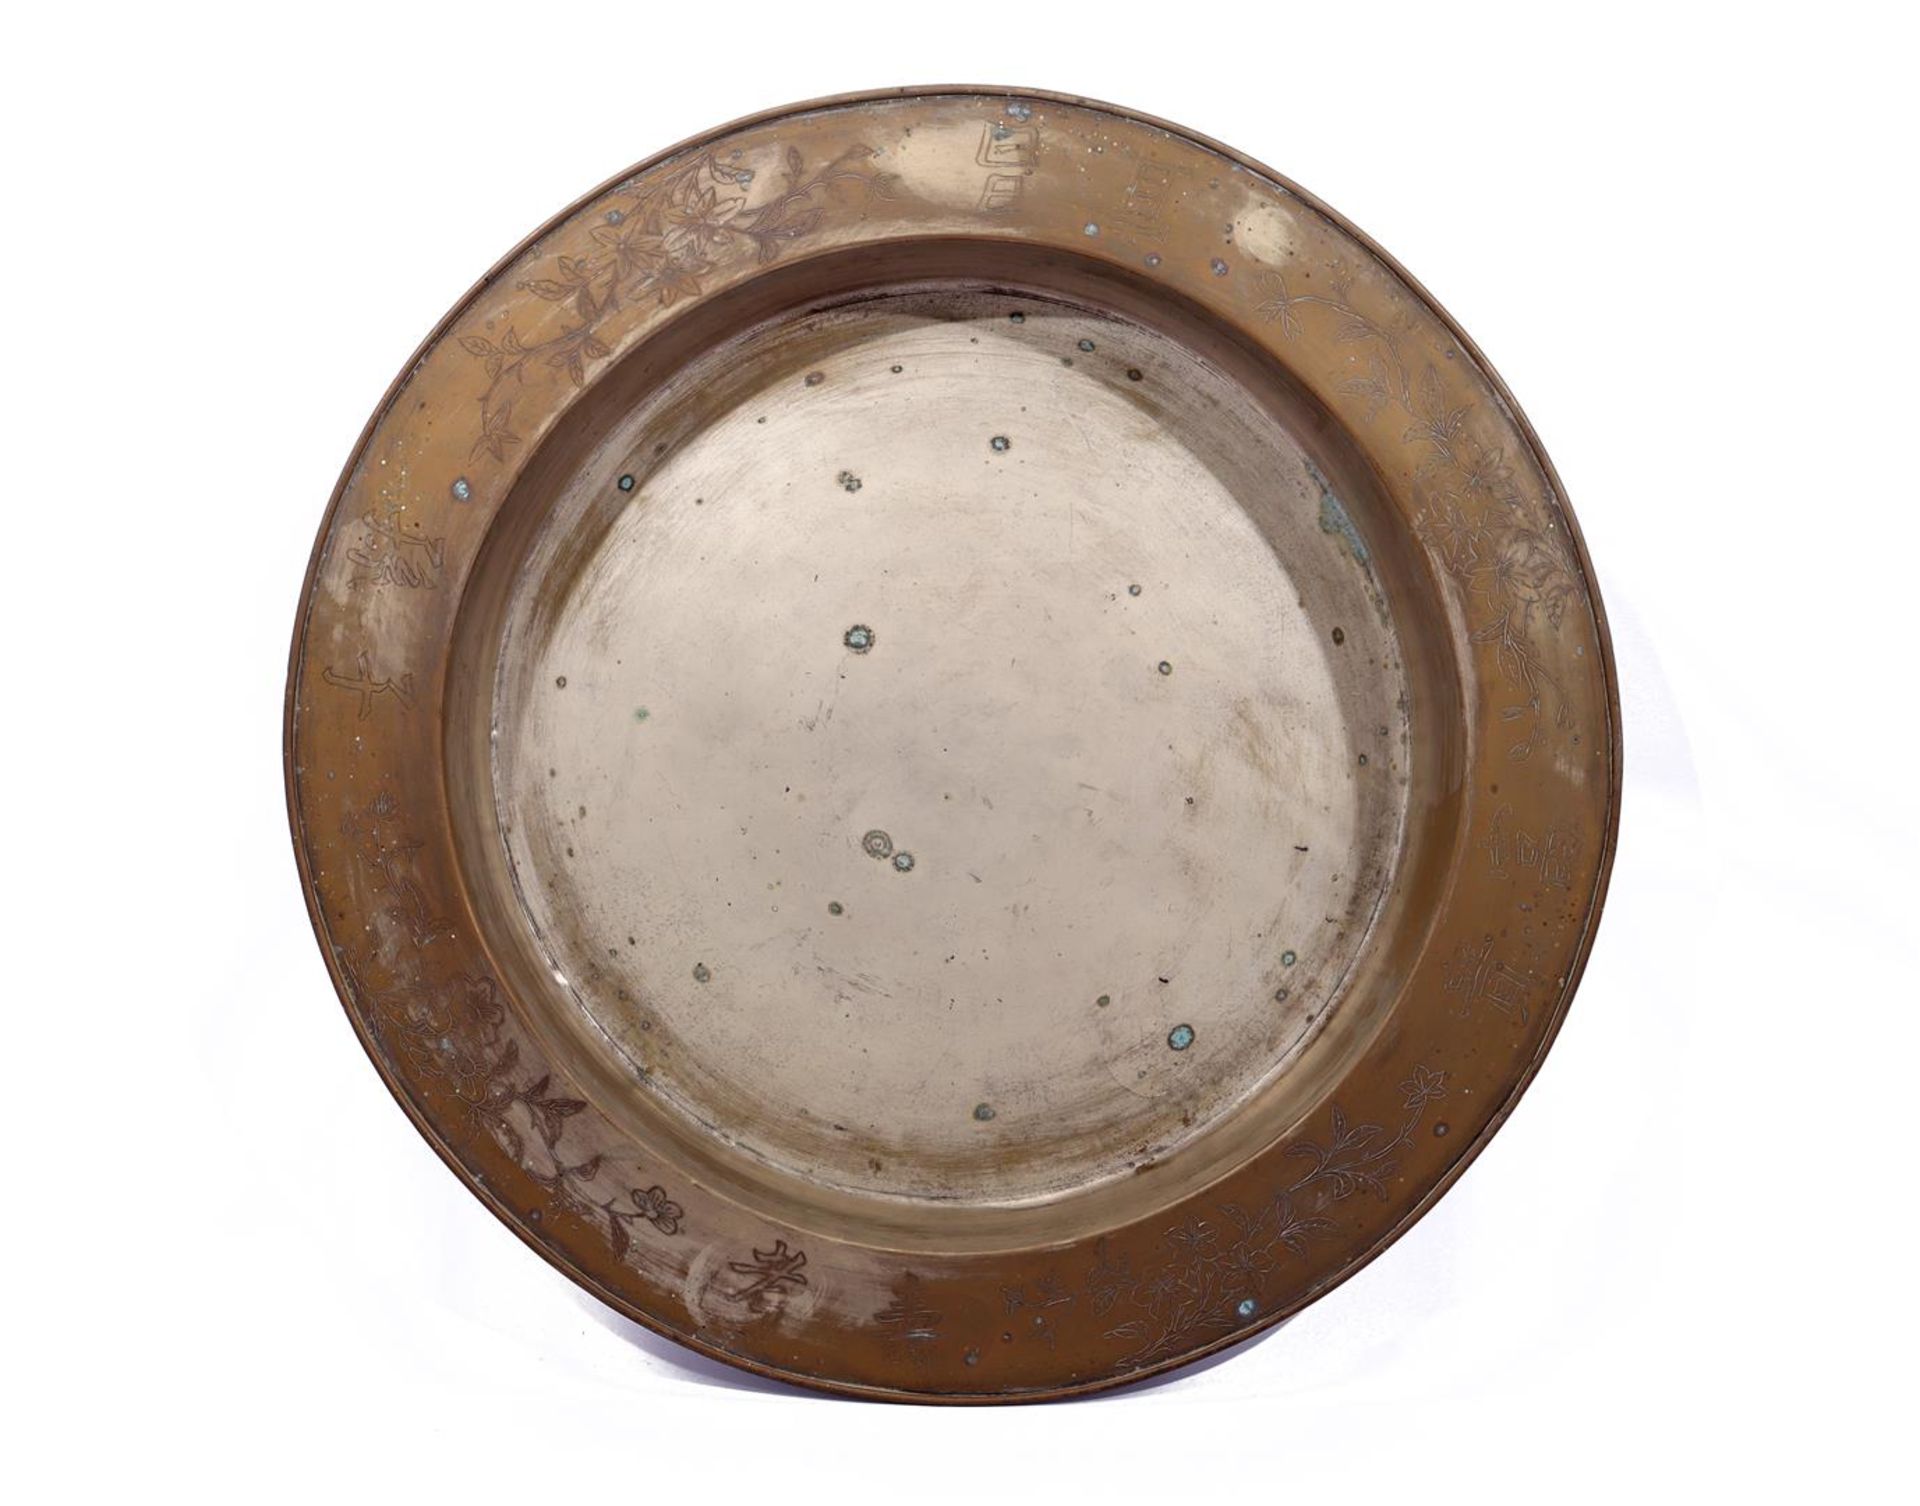 Large round Asian metal bowl